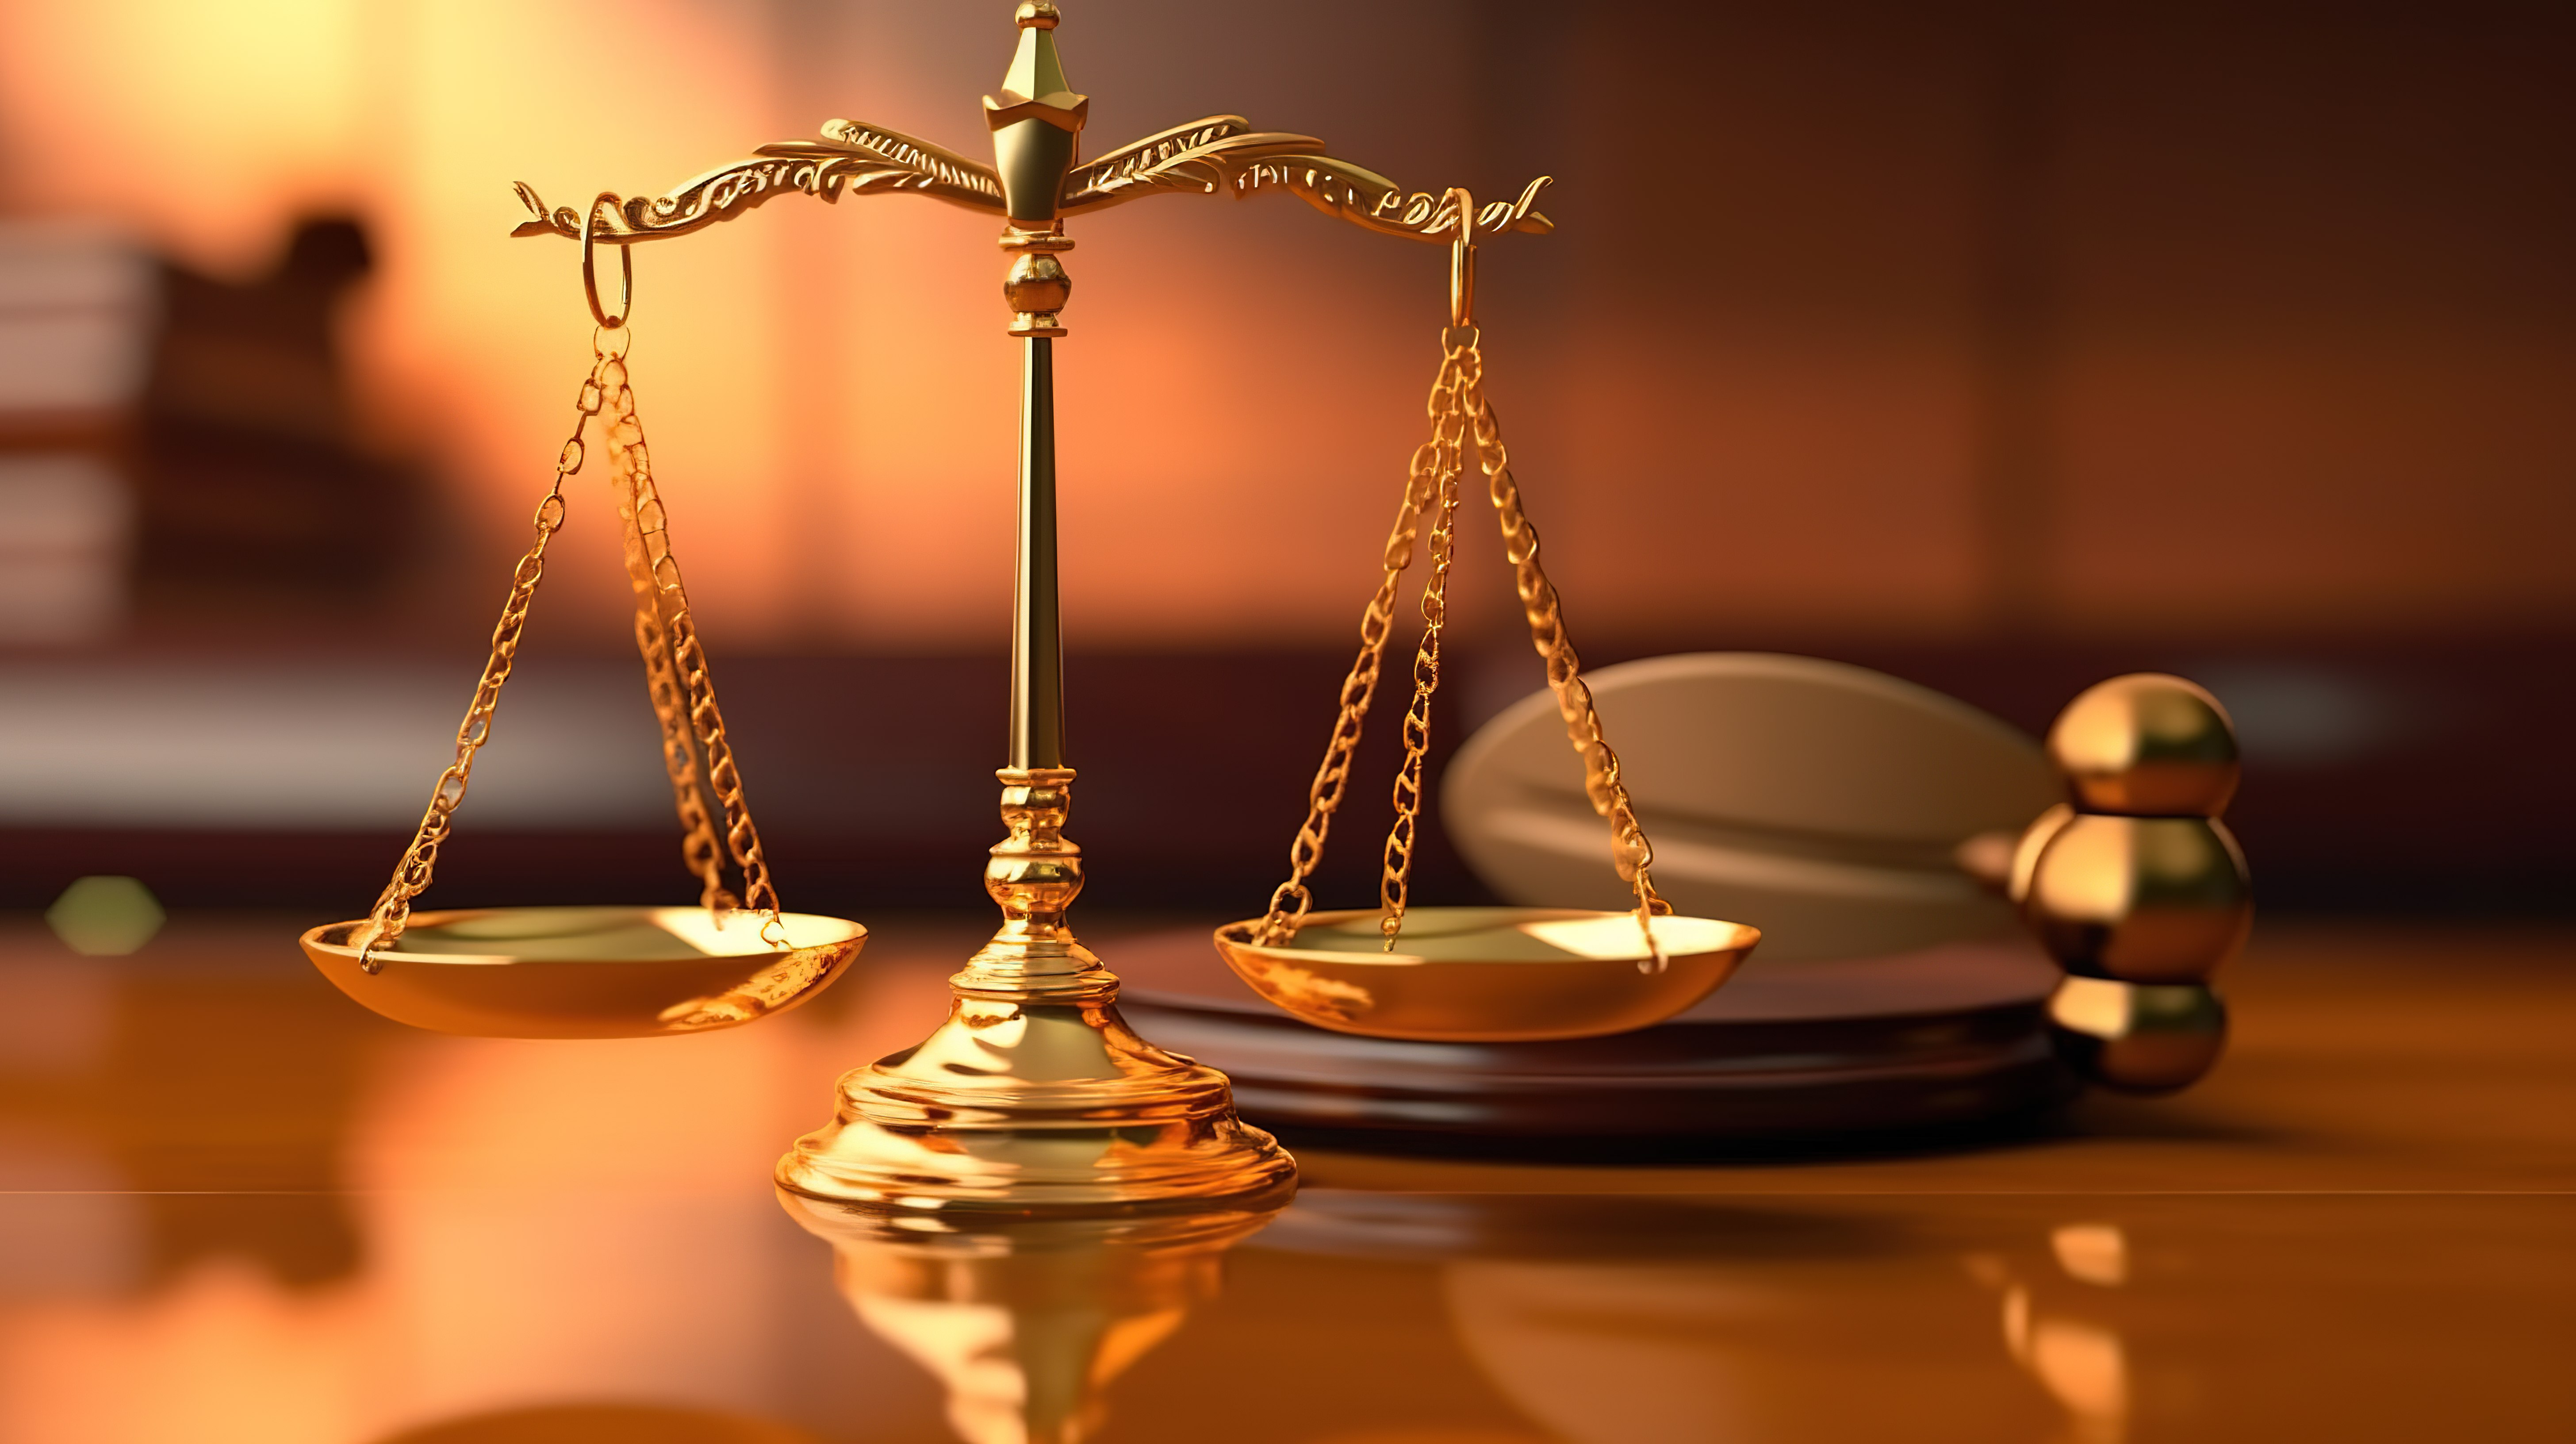 3d 渲染的法律象征木槌法官和正义的黄金天平图片